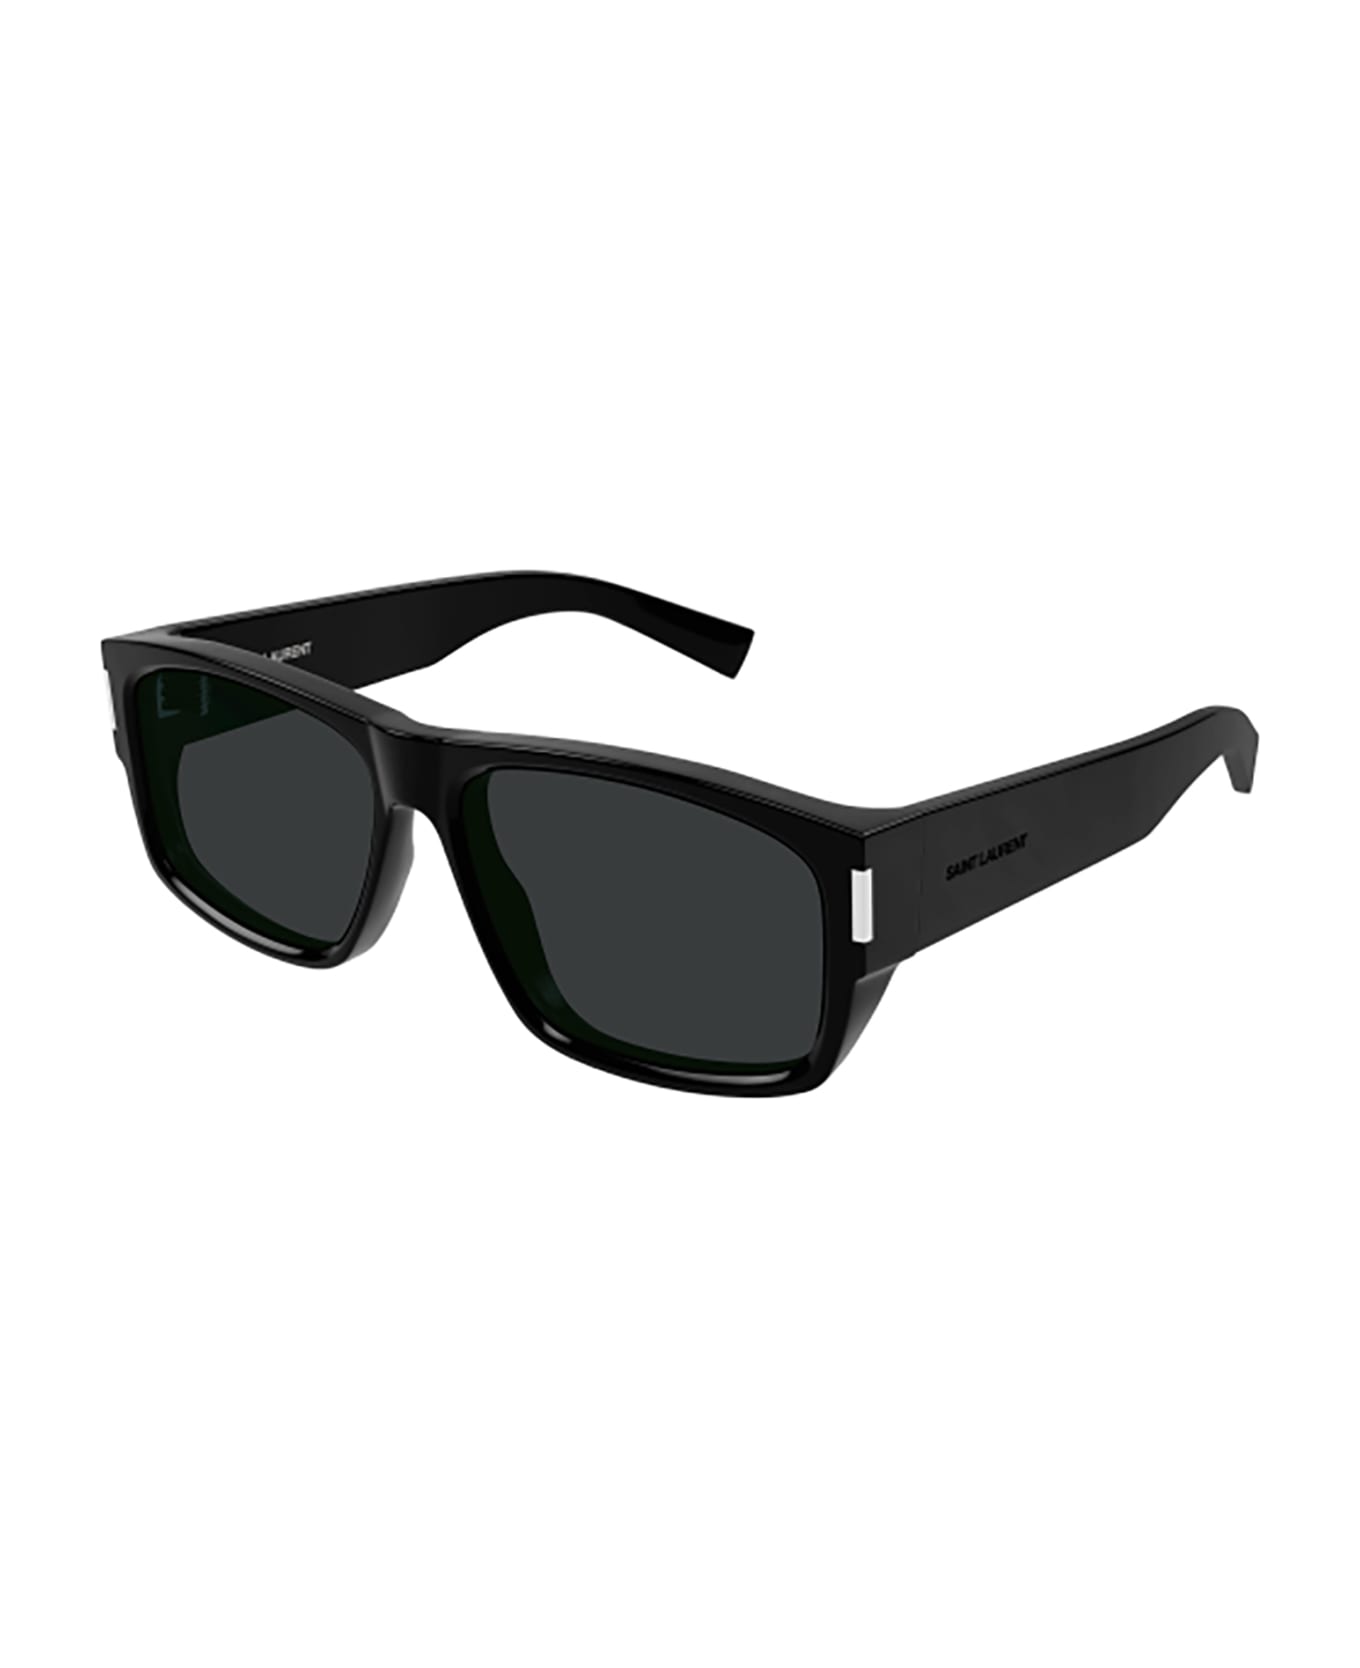 Saint Laurent Eyewear SL 689 Sunglasses - Black Black Black